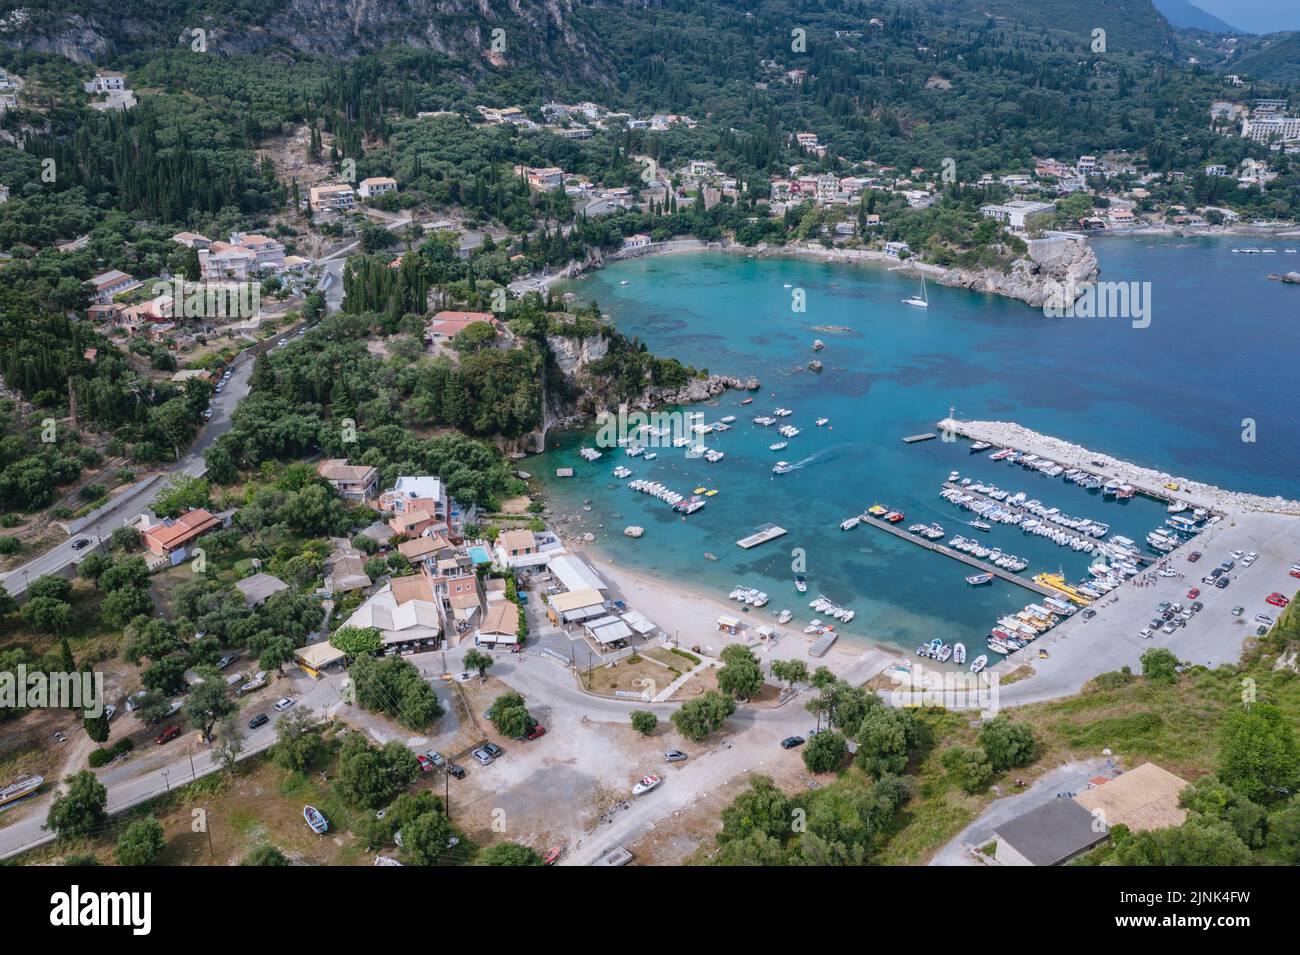 Bahía en forma de hogar en Palaiokastritsa famosa ciudad turística en la isla griega de Corfú, vista con la playa de Alypa y el puerto deportivo Foto de stock